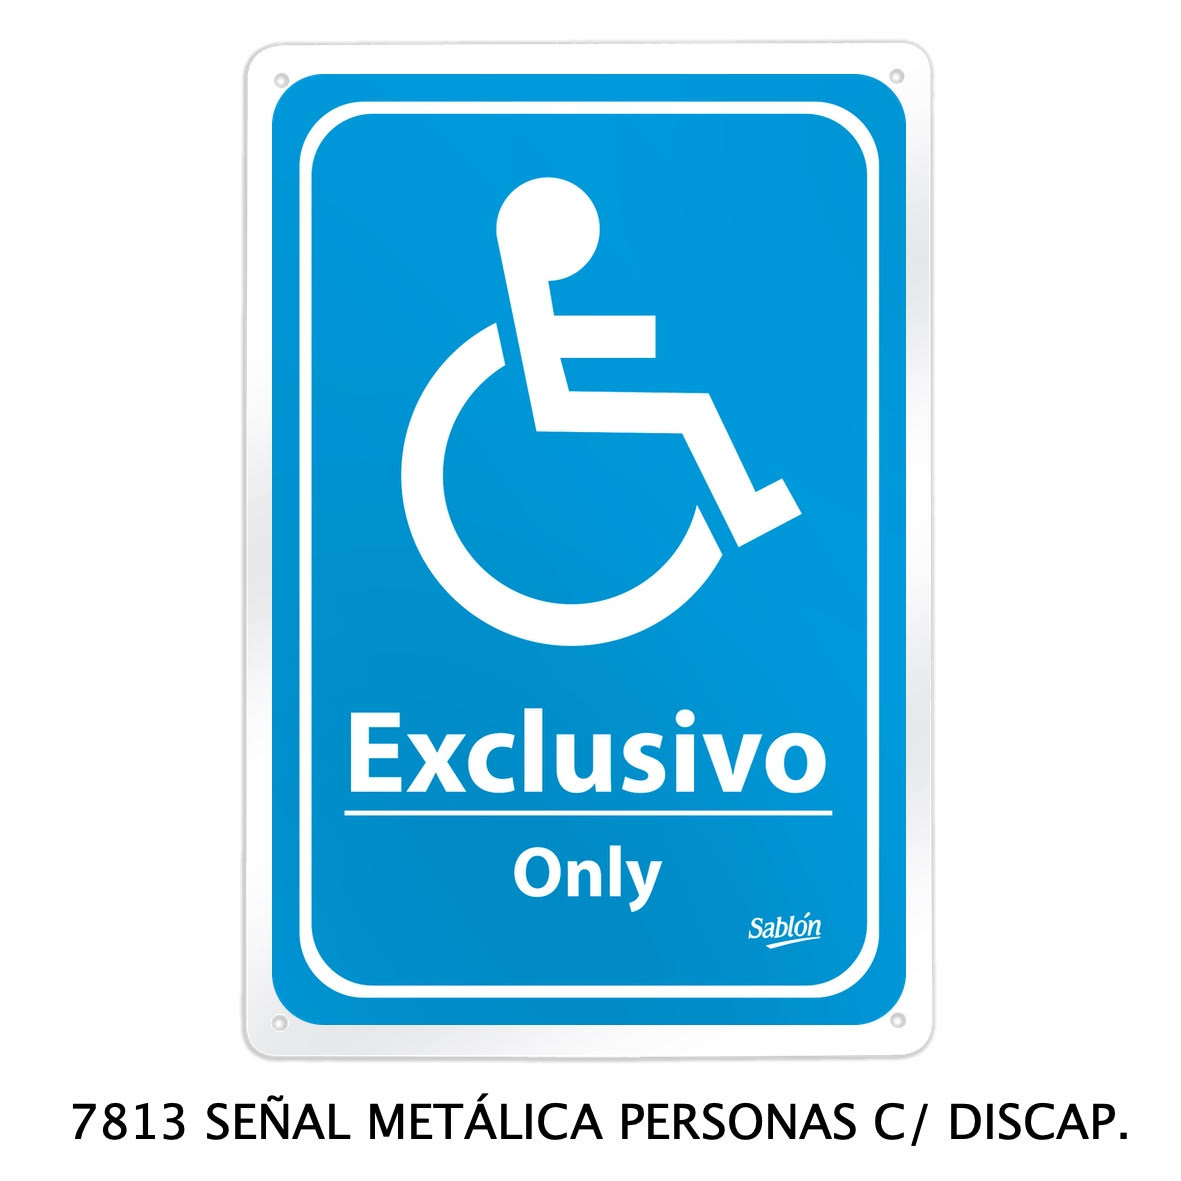 Señal metálica de personas con discapacidad modelo 7813 de Sablón